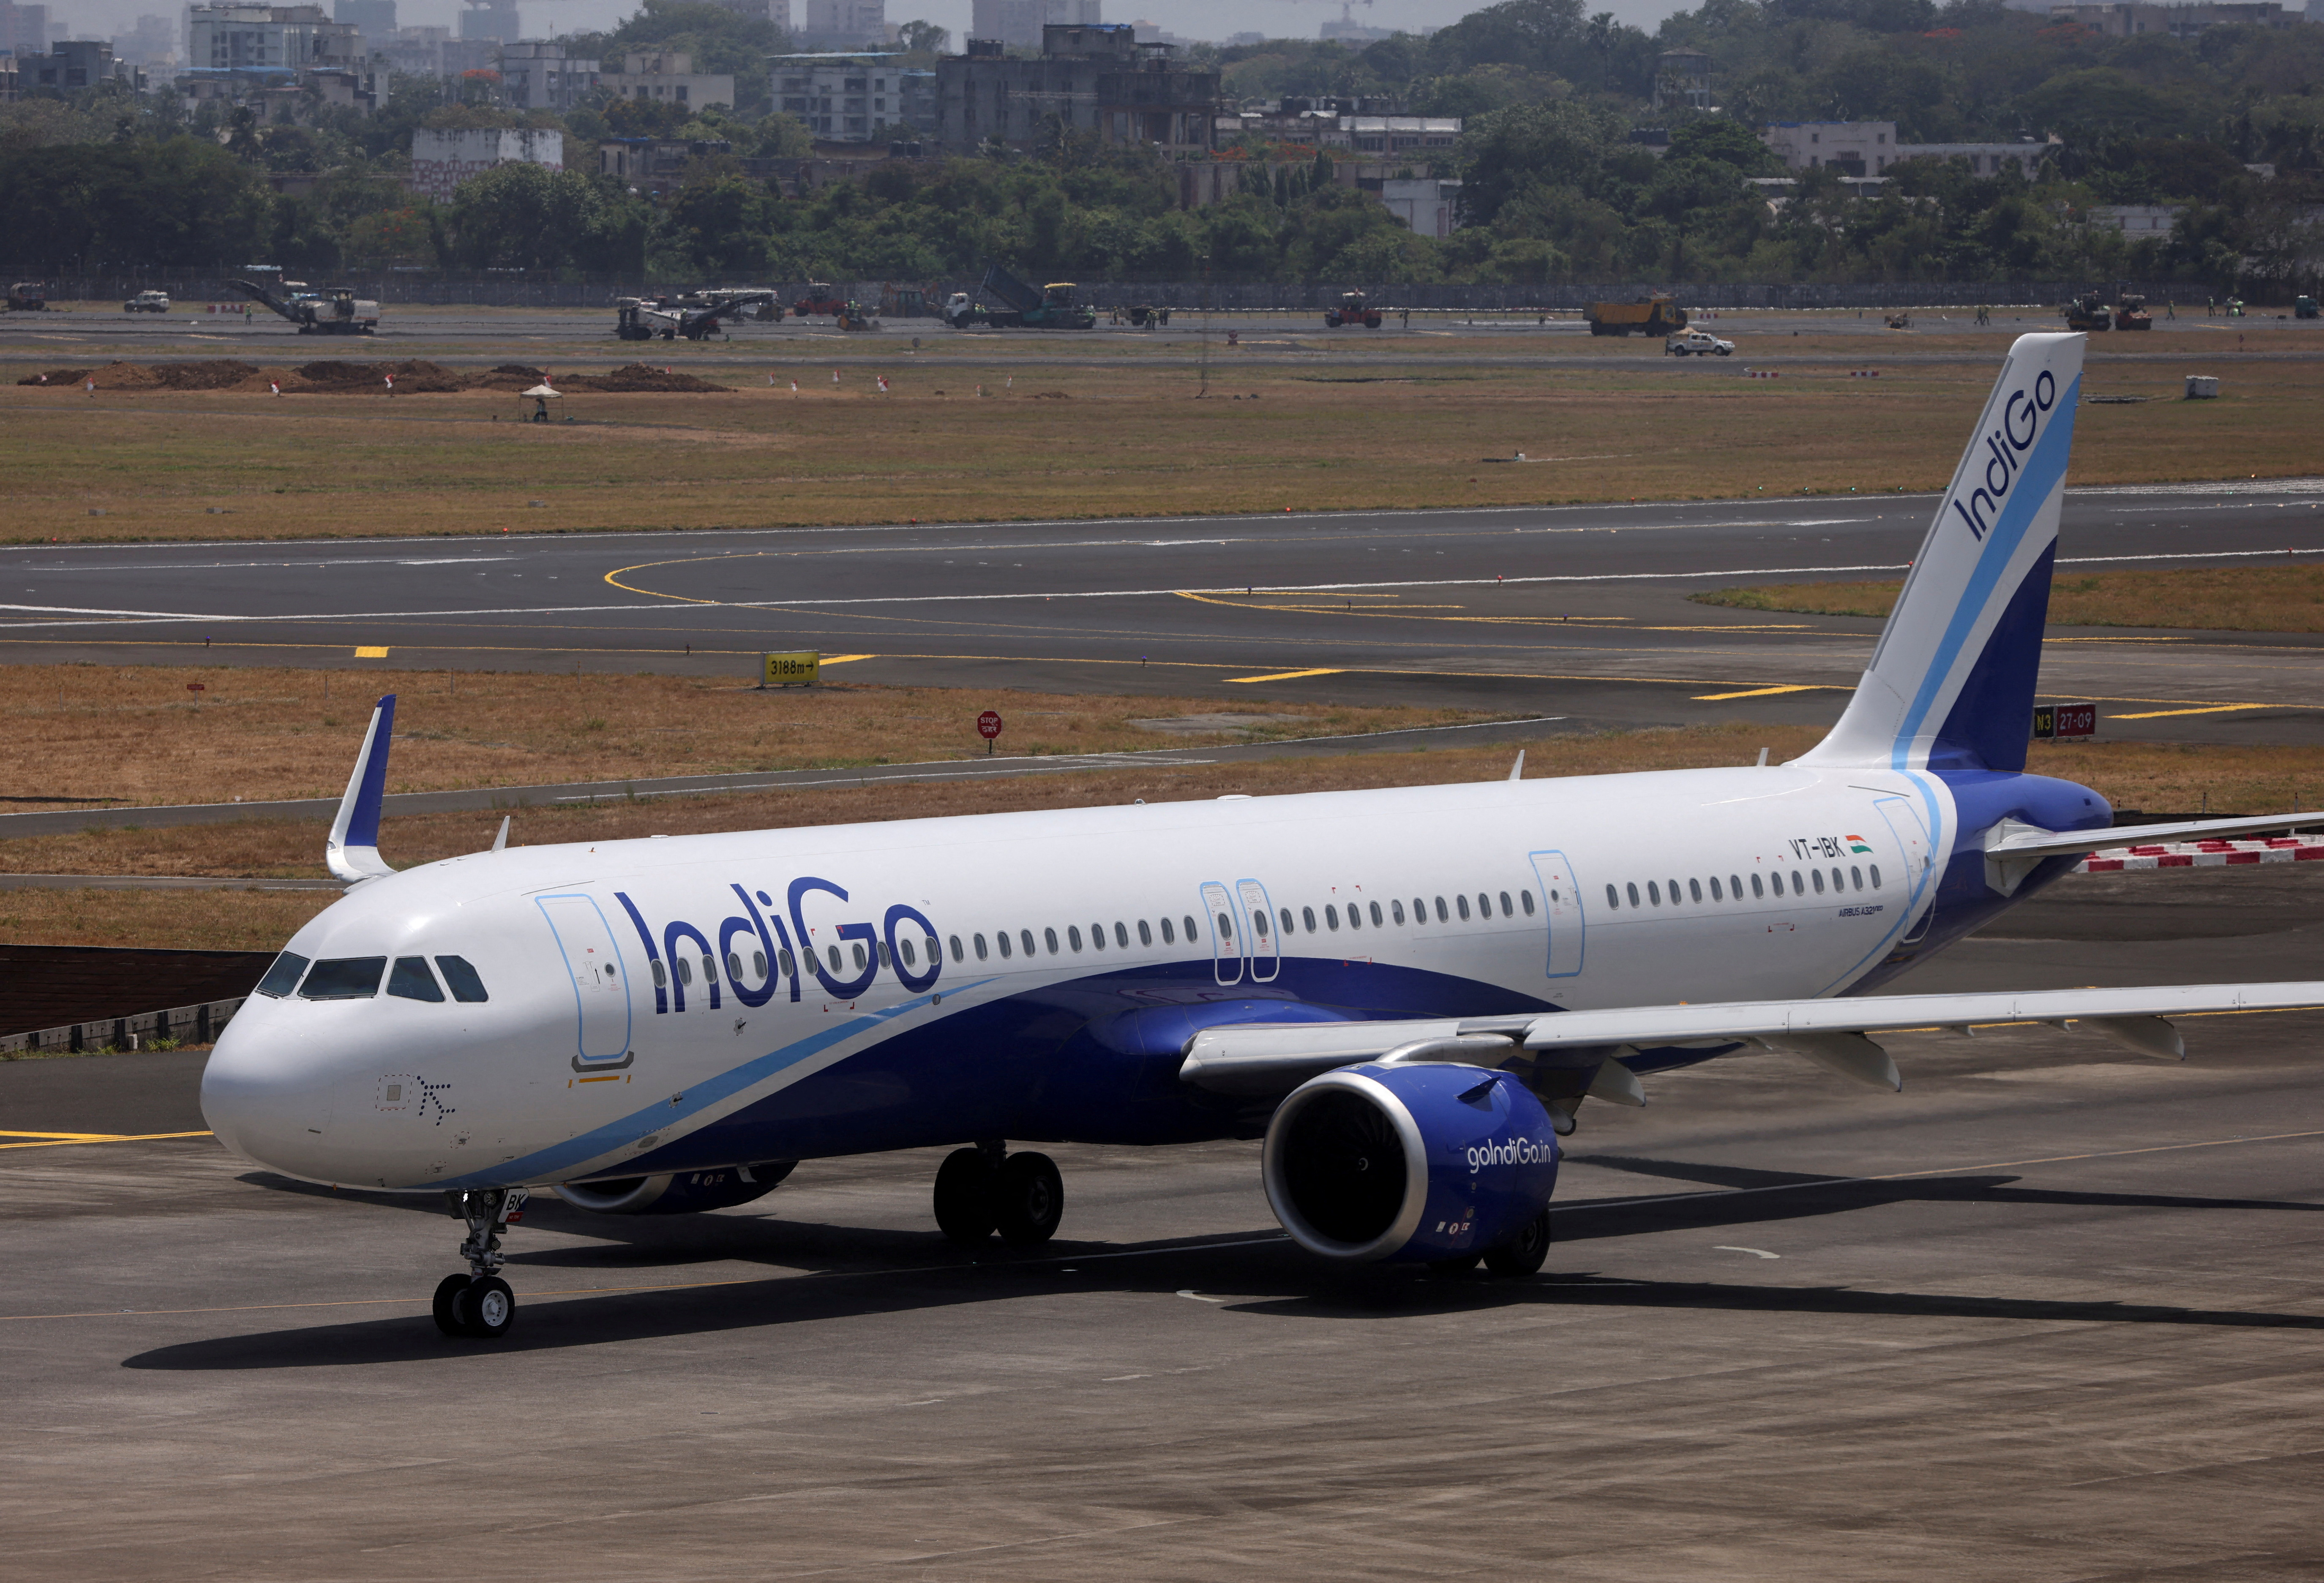 An IndiGo airlines passenger aircraft taxis on the tarmac at Chhatrapati Shivaji International airport in Mumbai